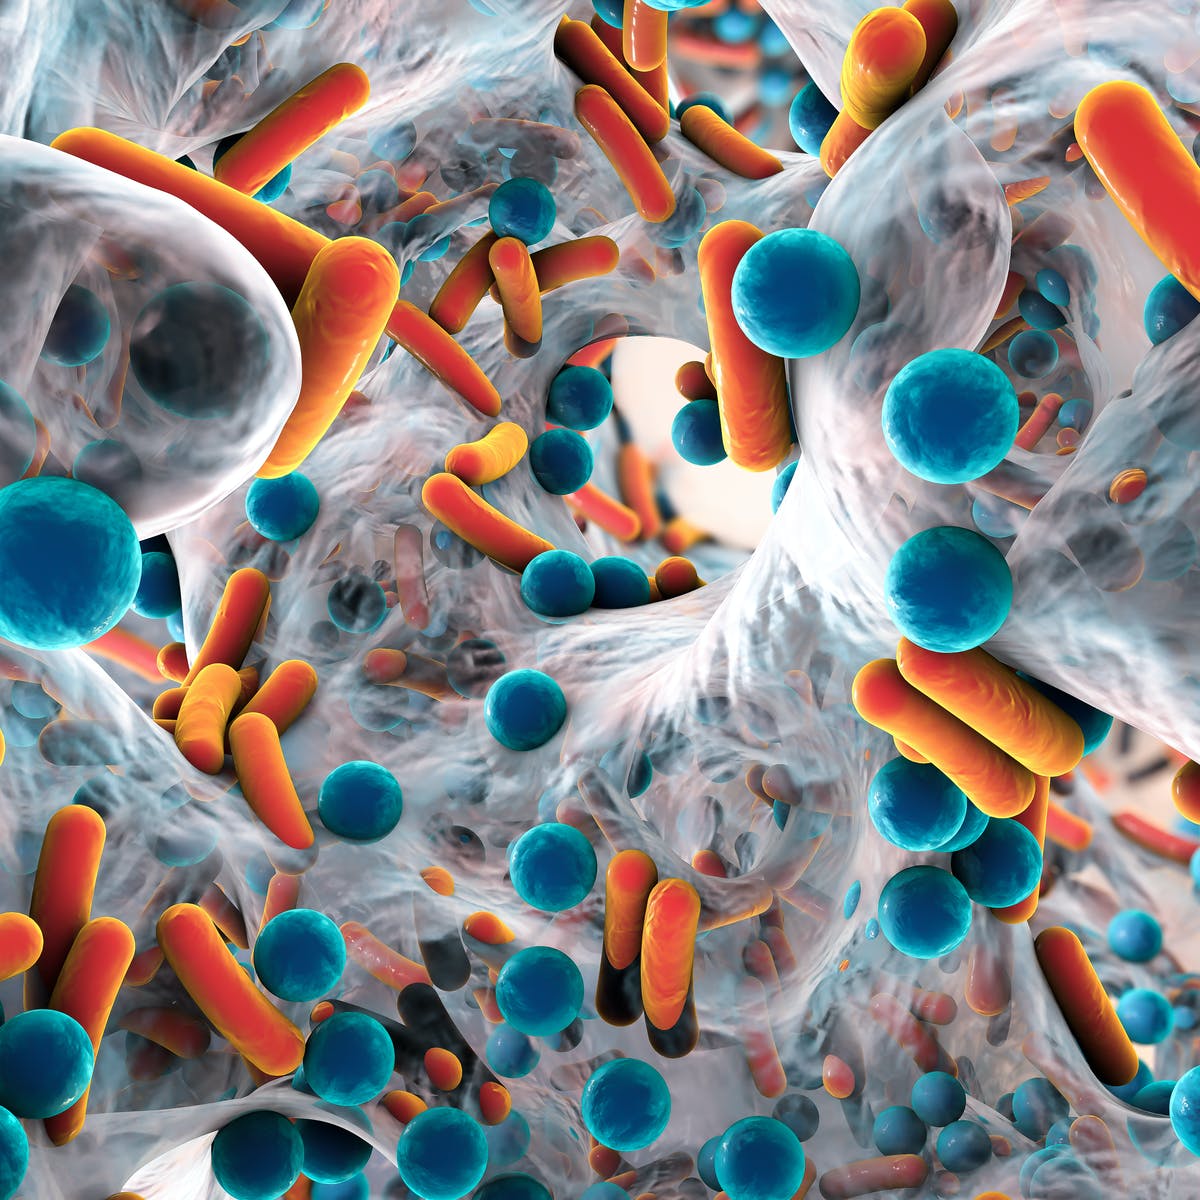 Cerca de 10 millones de personas podrían morir cada año por bacterias resistentes a los antibióticos dice OMS